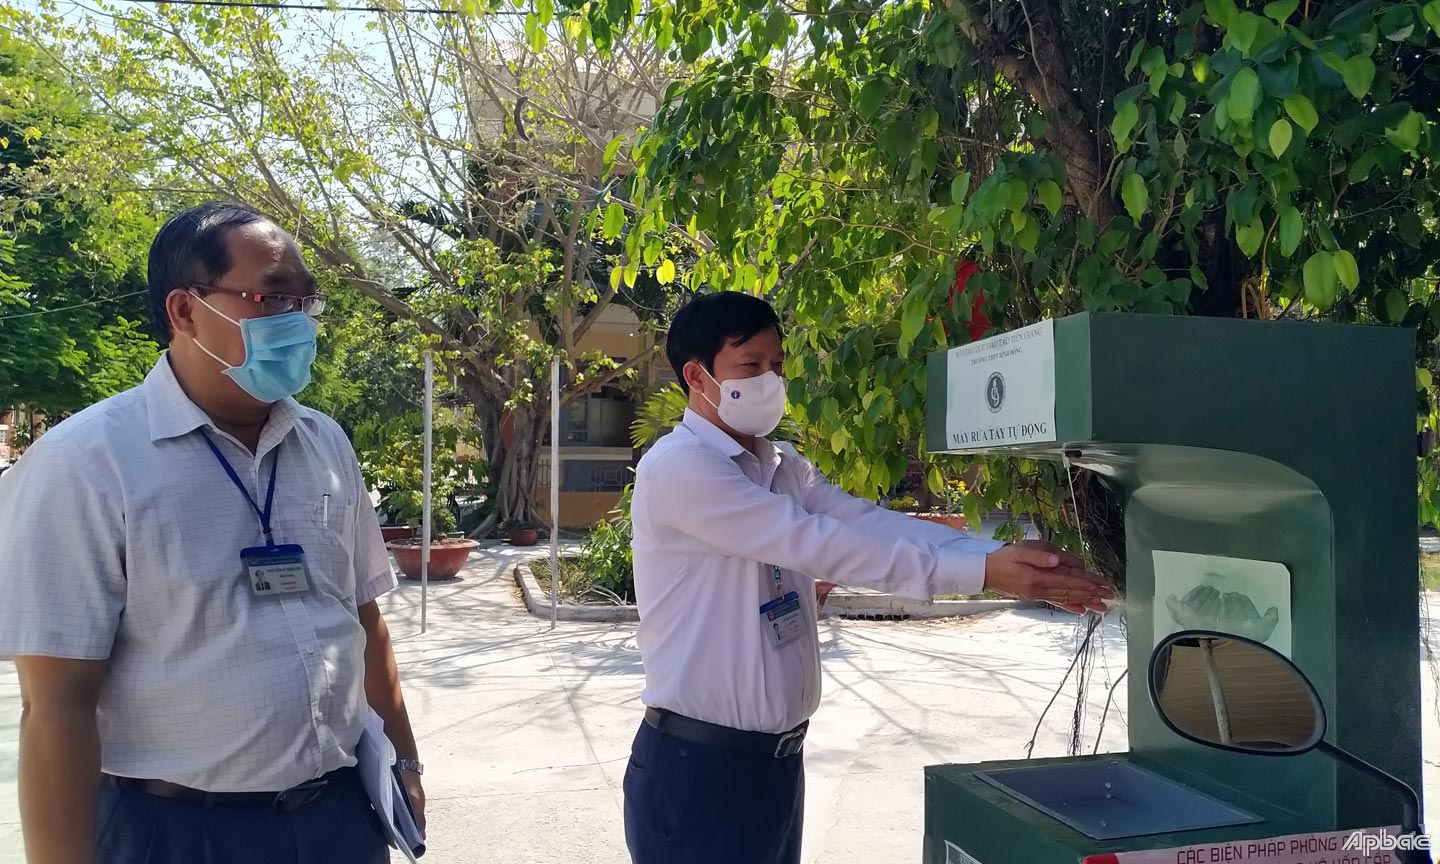 Đồng chí Lê Quang Trí kiểm tra hệ thống máy rửa tay sát khuẩn do nhóm học sinh Trường THPT Bình Đông thực hiện. 